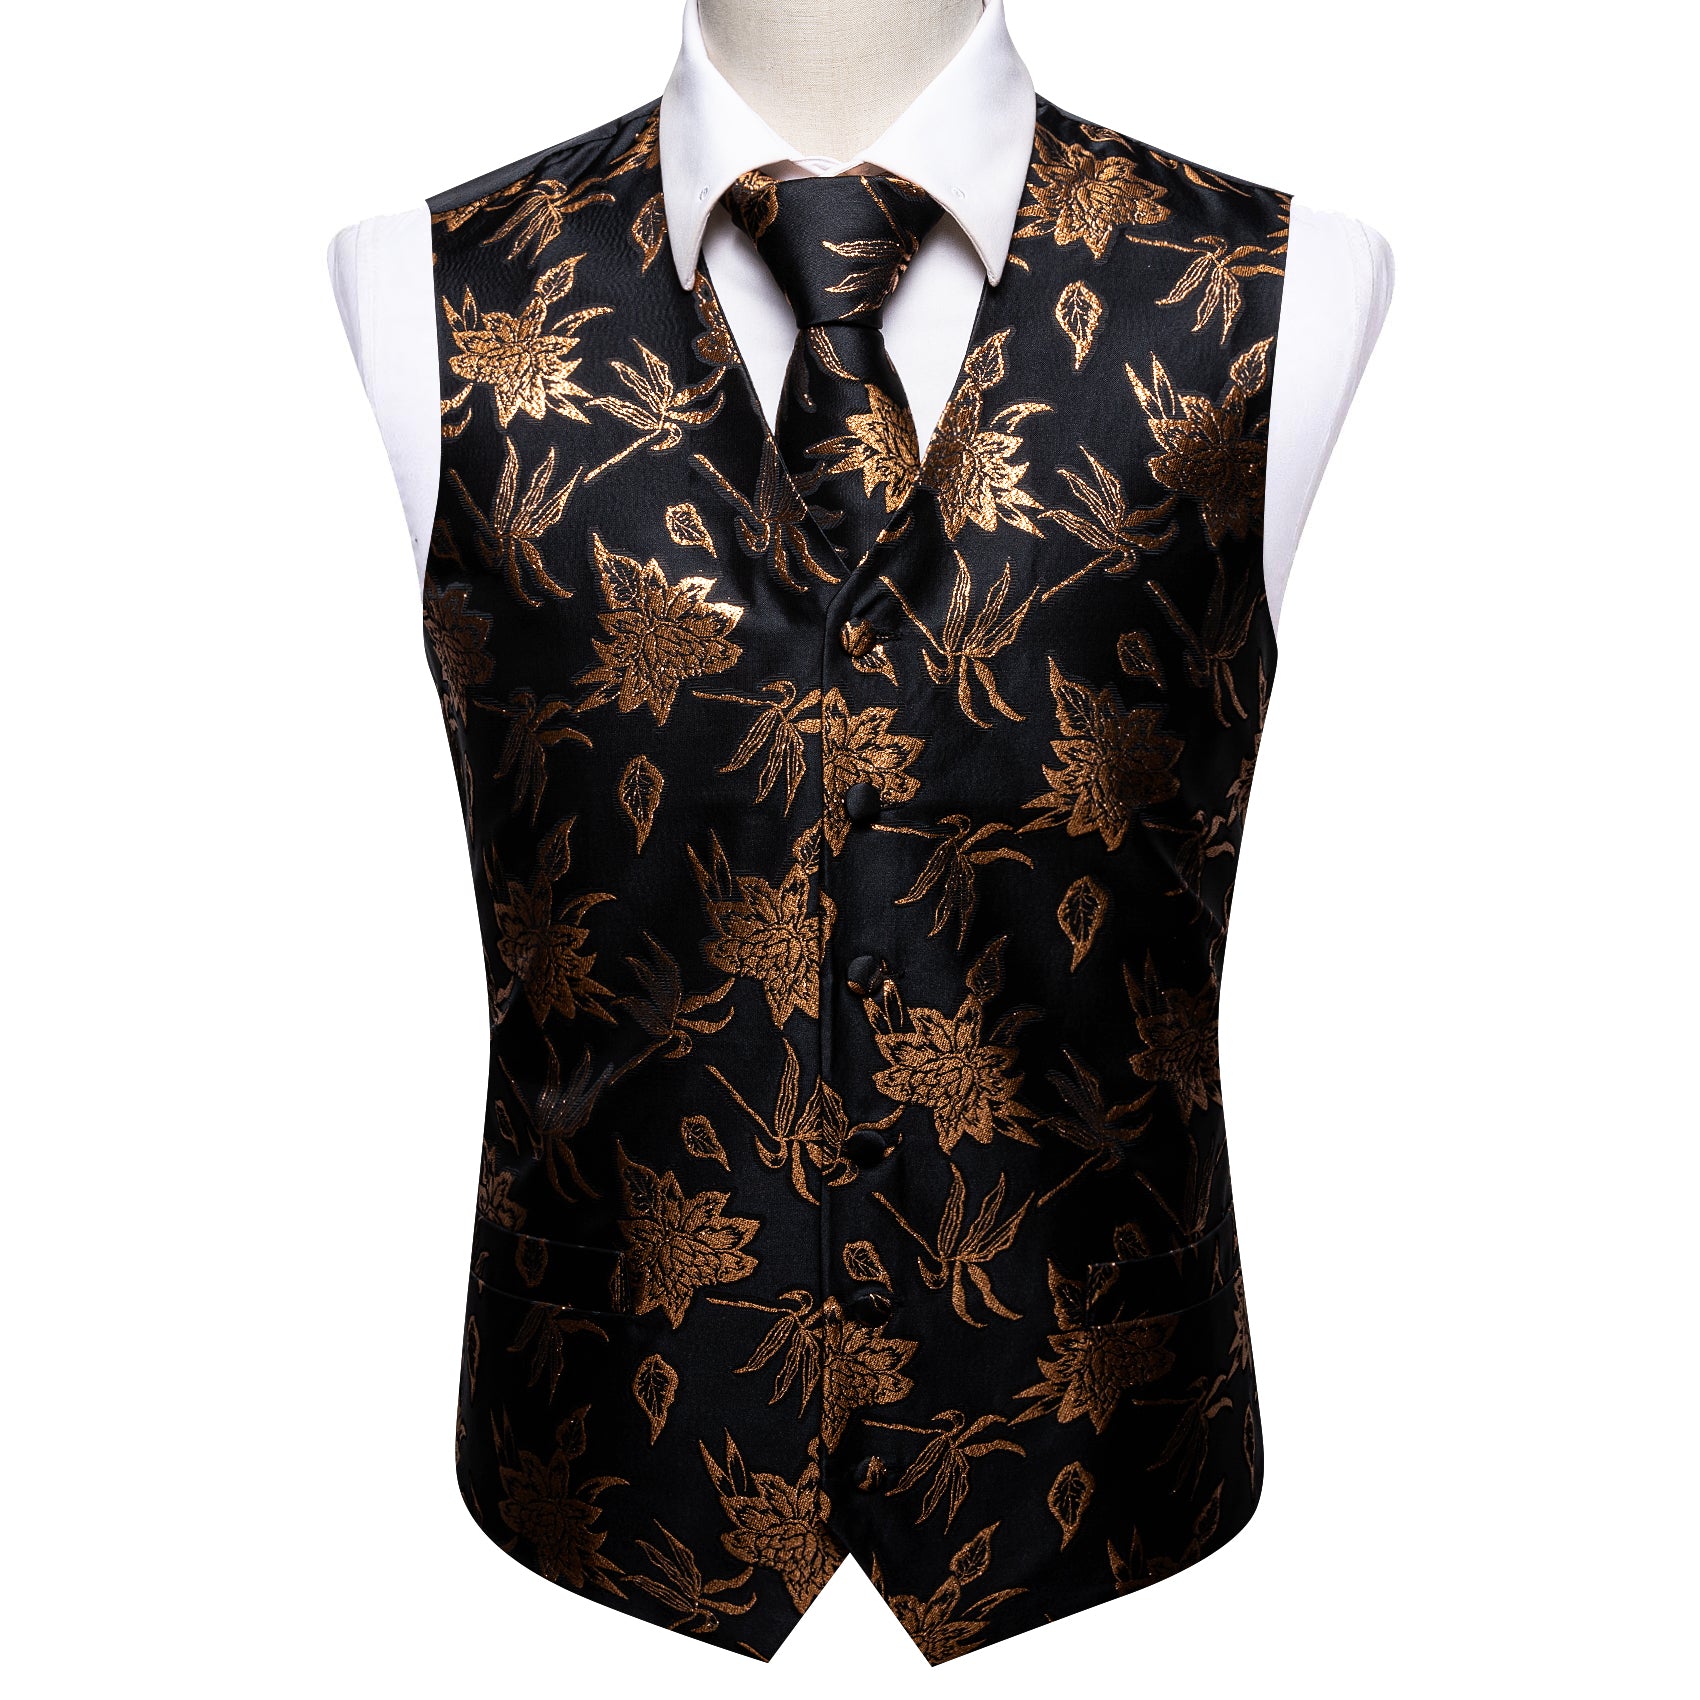 Barry.wang Men's Vest Black Gold Leaves Floral Silk Vest Tie Set